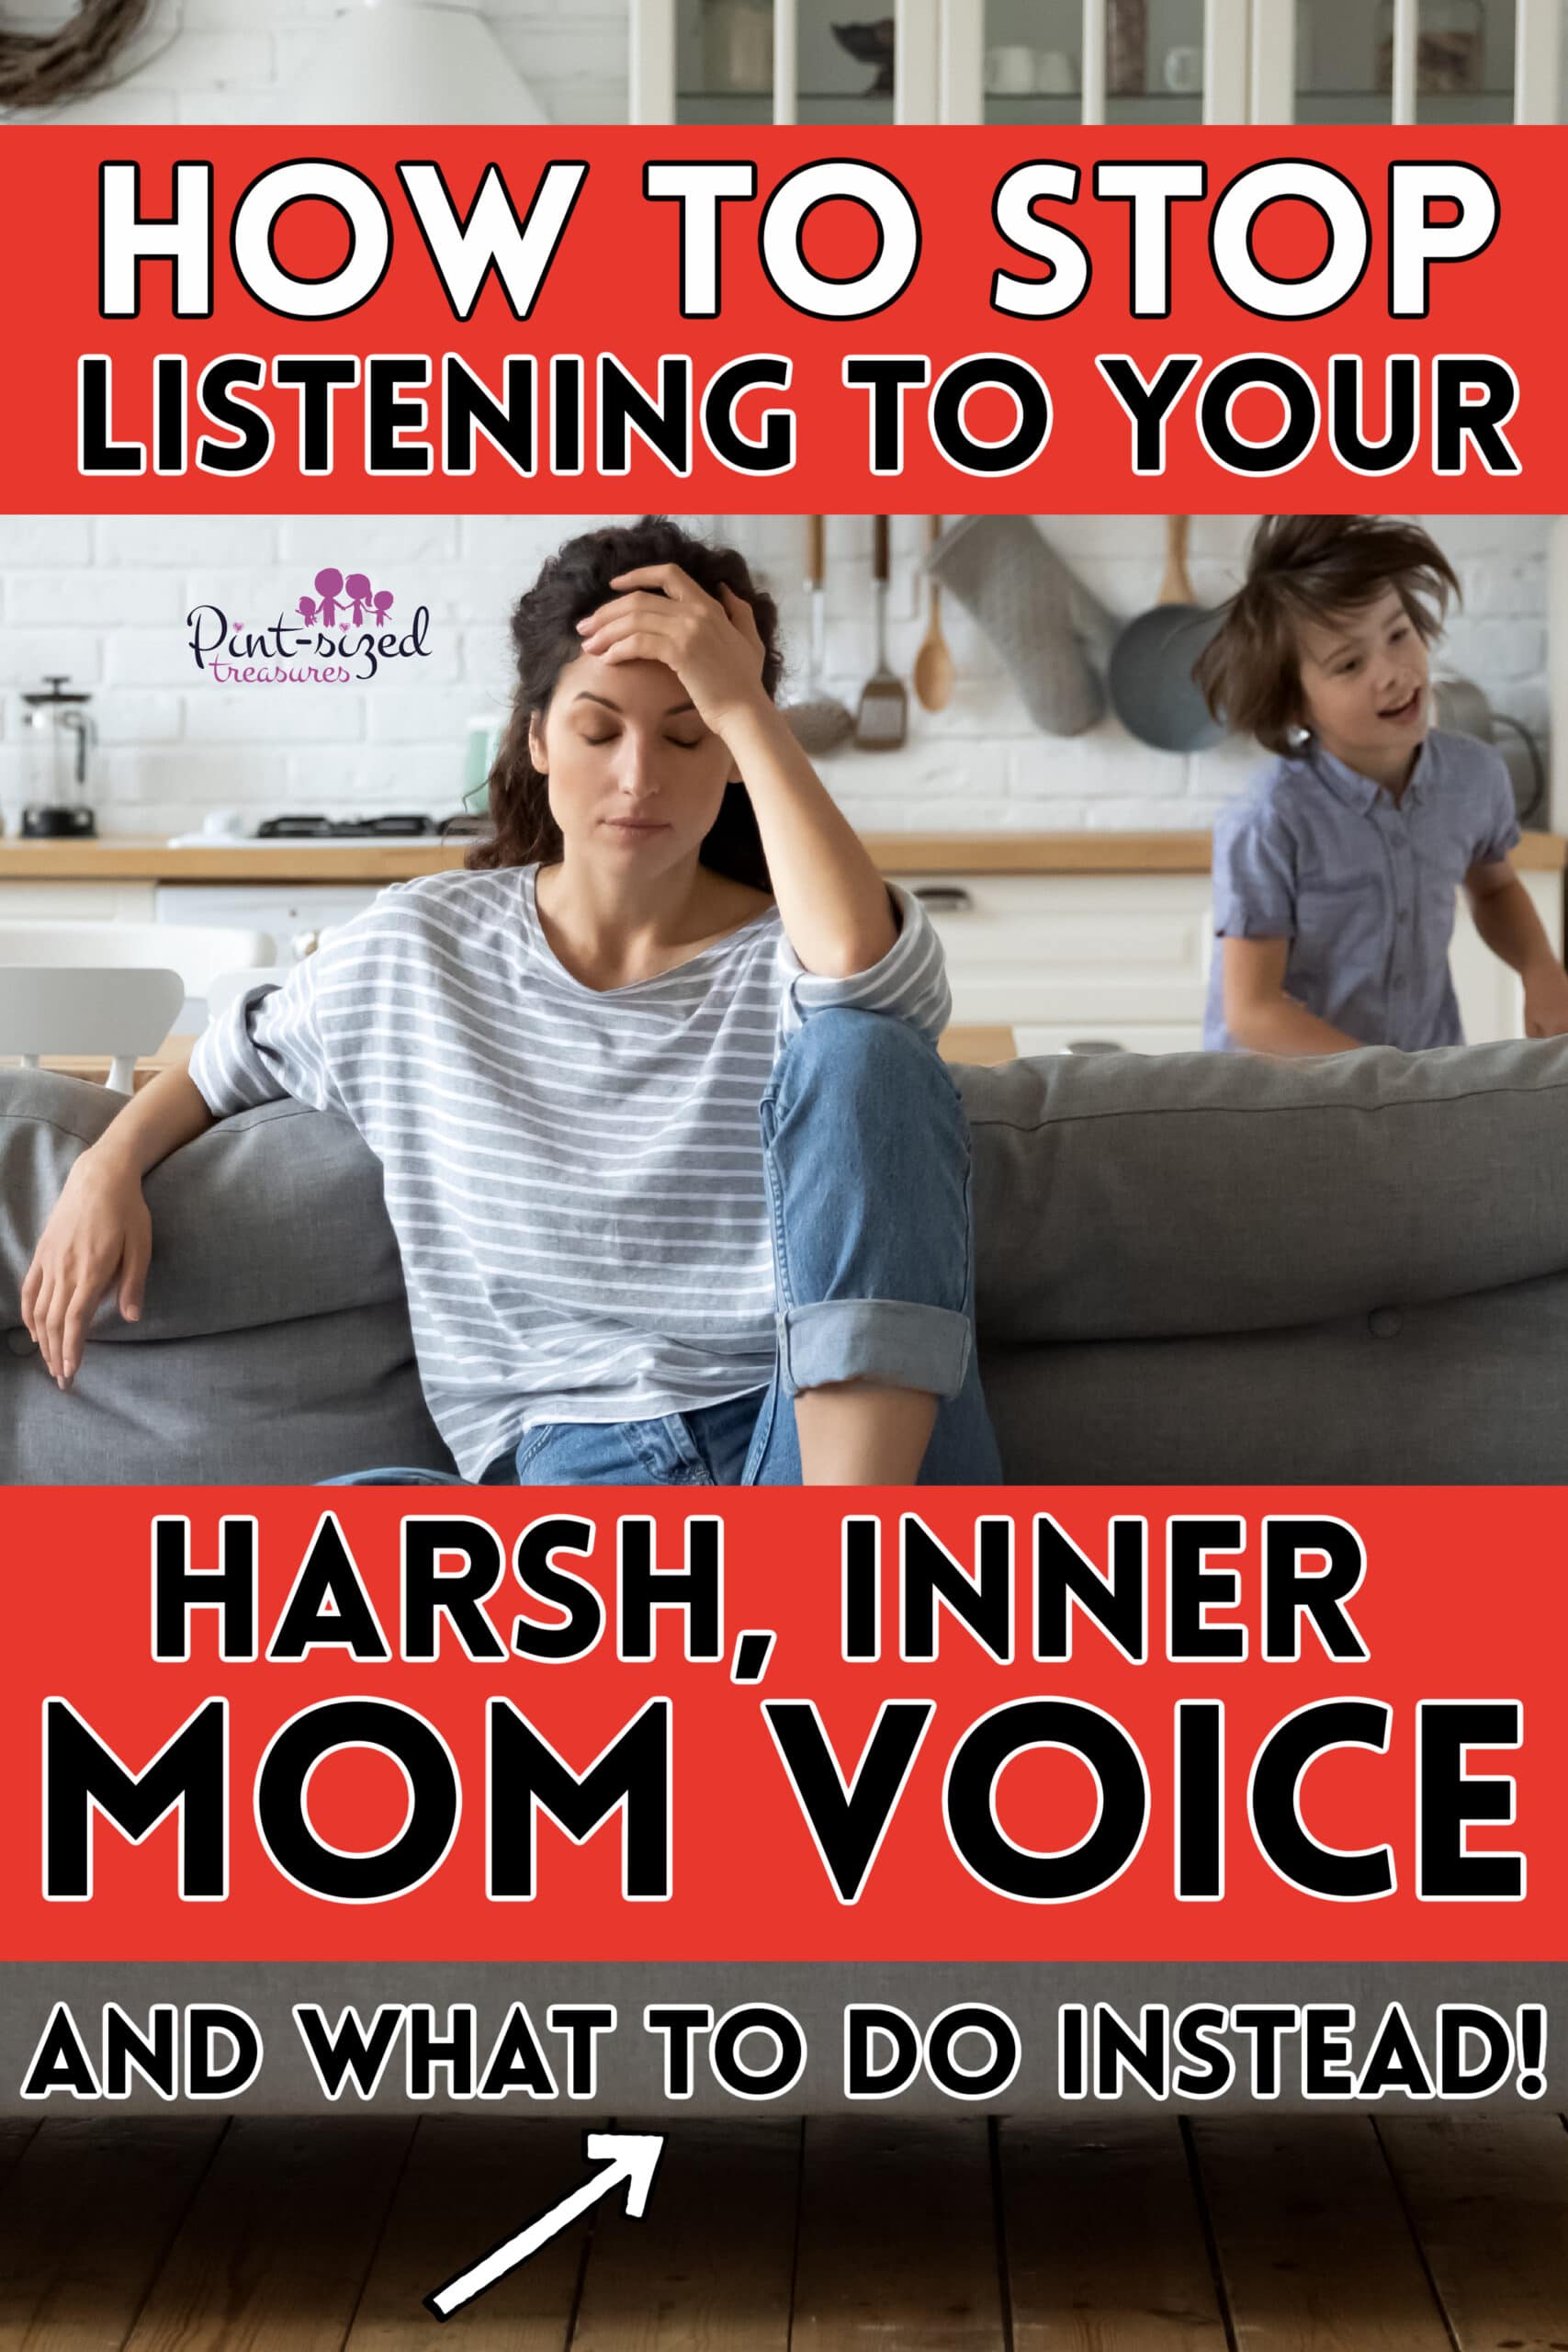 stop listening to harsh inner mom voice